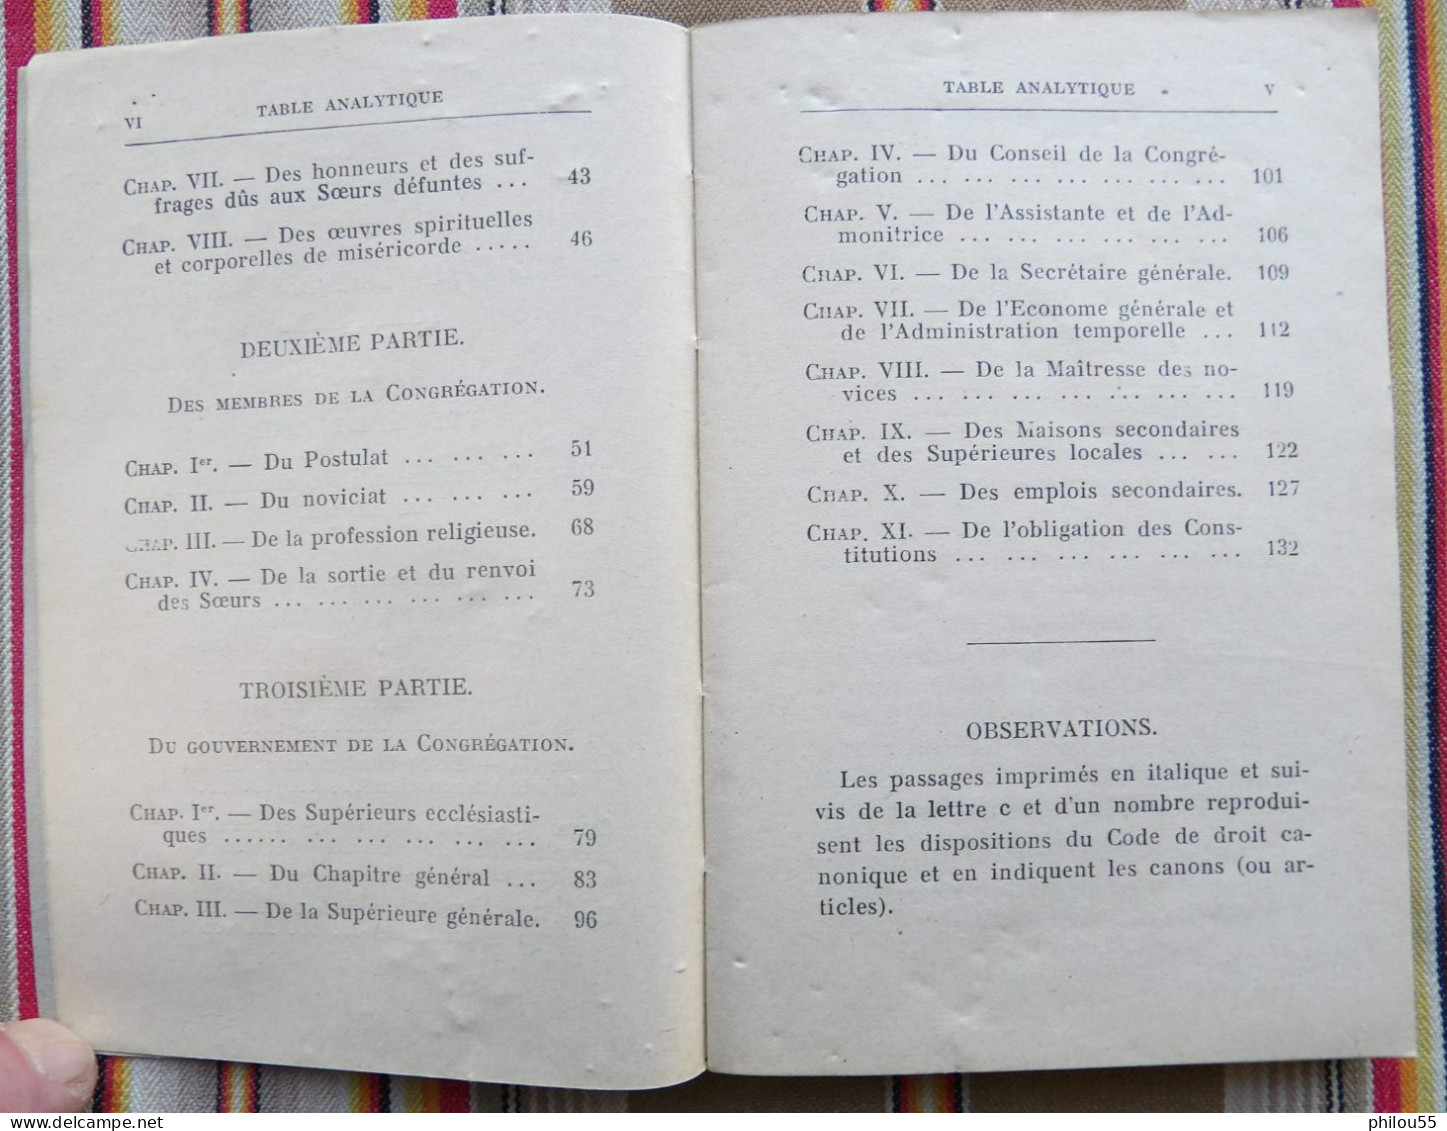 12 RODEZ CARRERE Constitutions des Soeurs de St Joseph d'Estaing DIOCESE DES RODEZ 1932